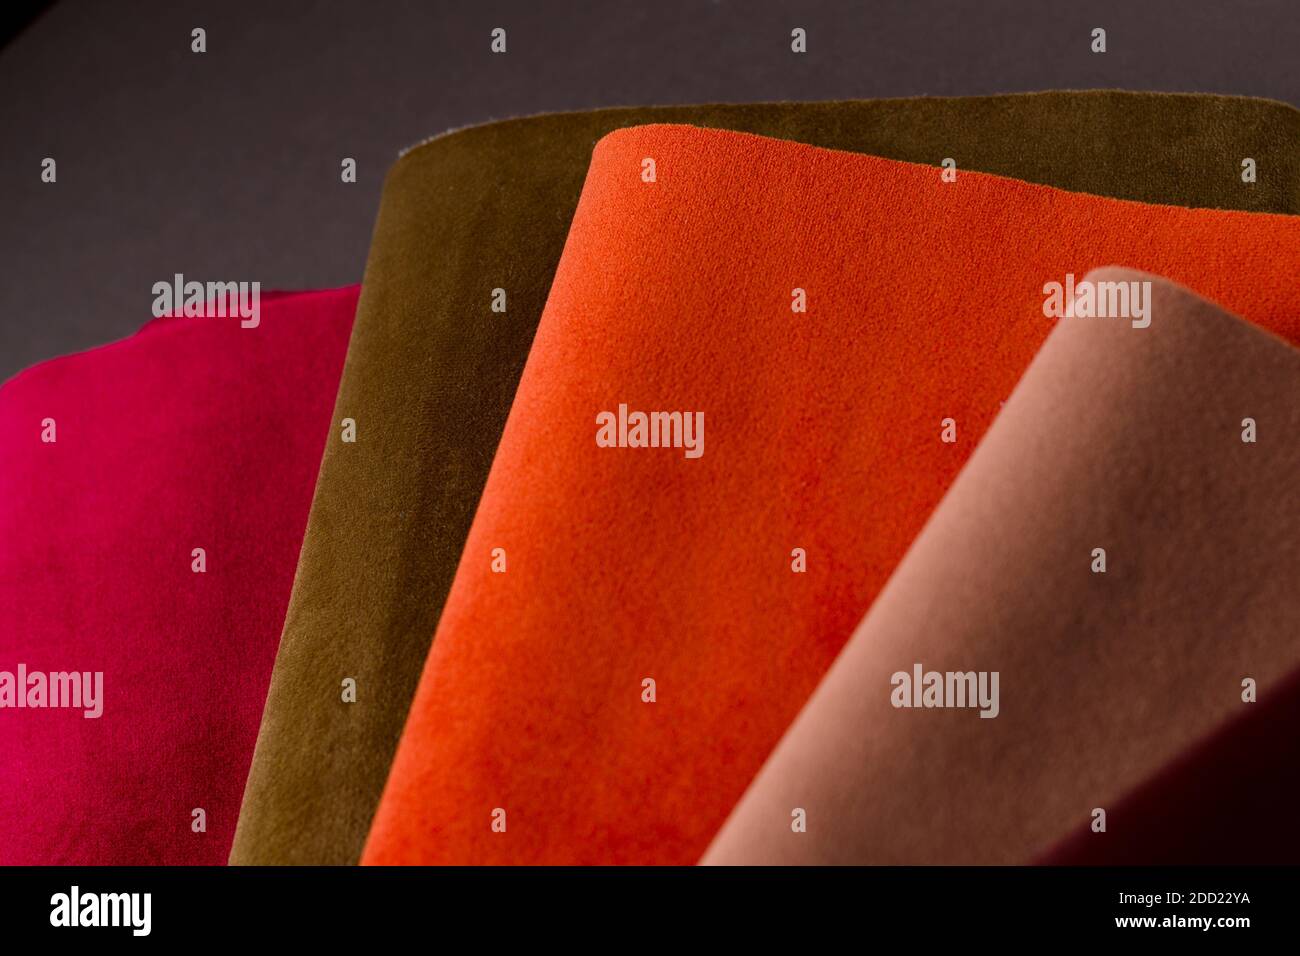 Une collection d'échantillons de textiles en velours rouge, marron et orange colorés. Arrière-plan de texture de tissu Banque D'Images